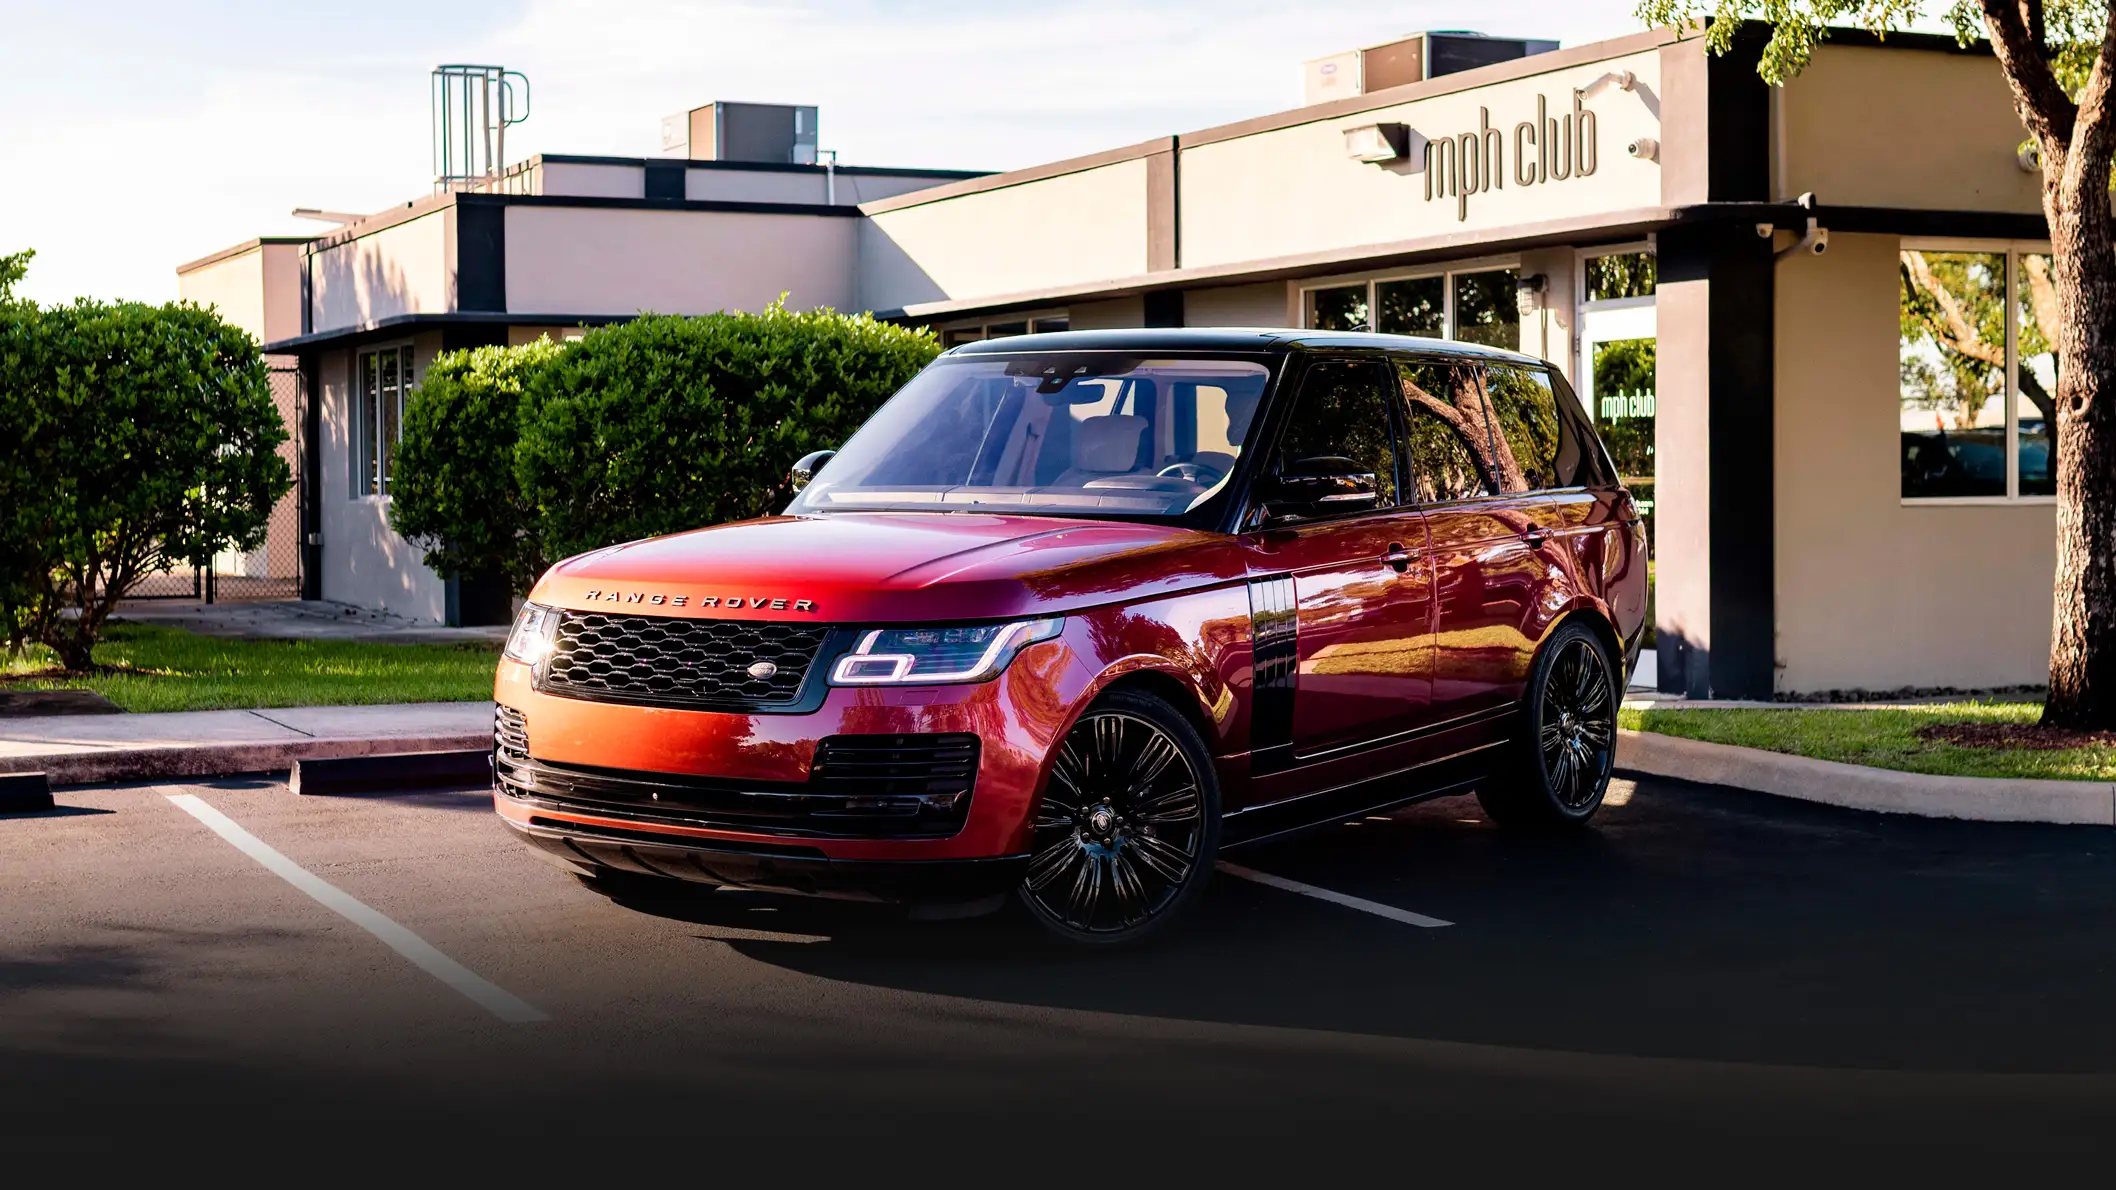 Red Range Rover rental Miami profile view mph club